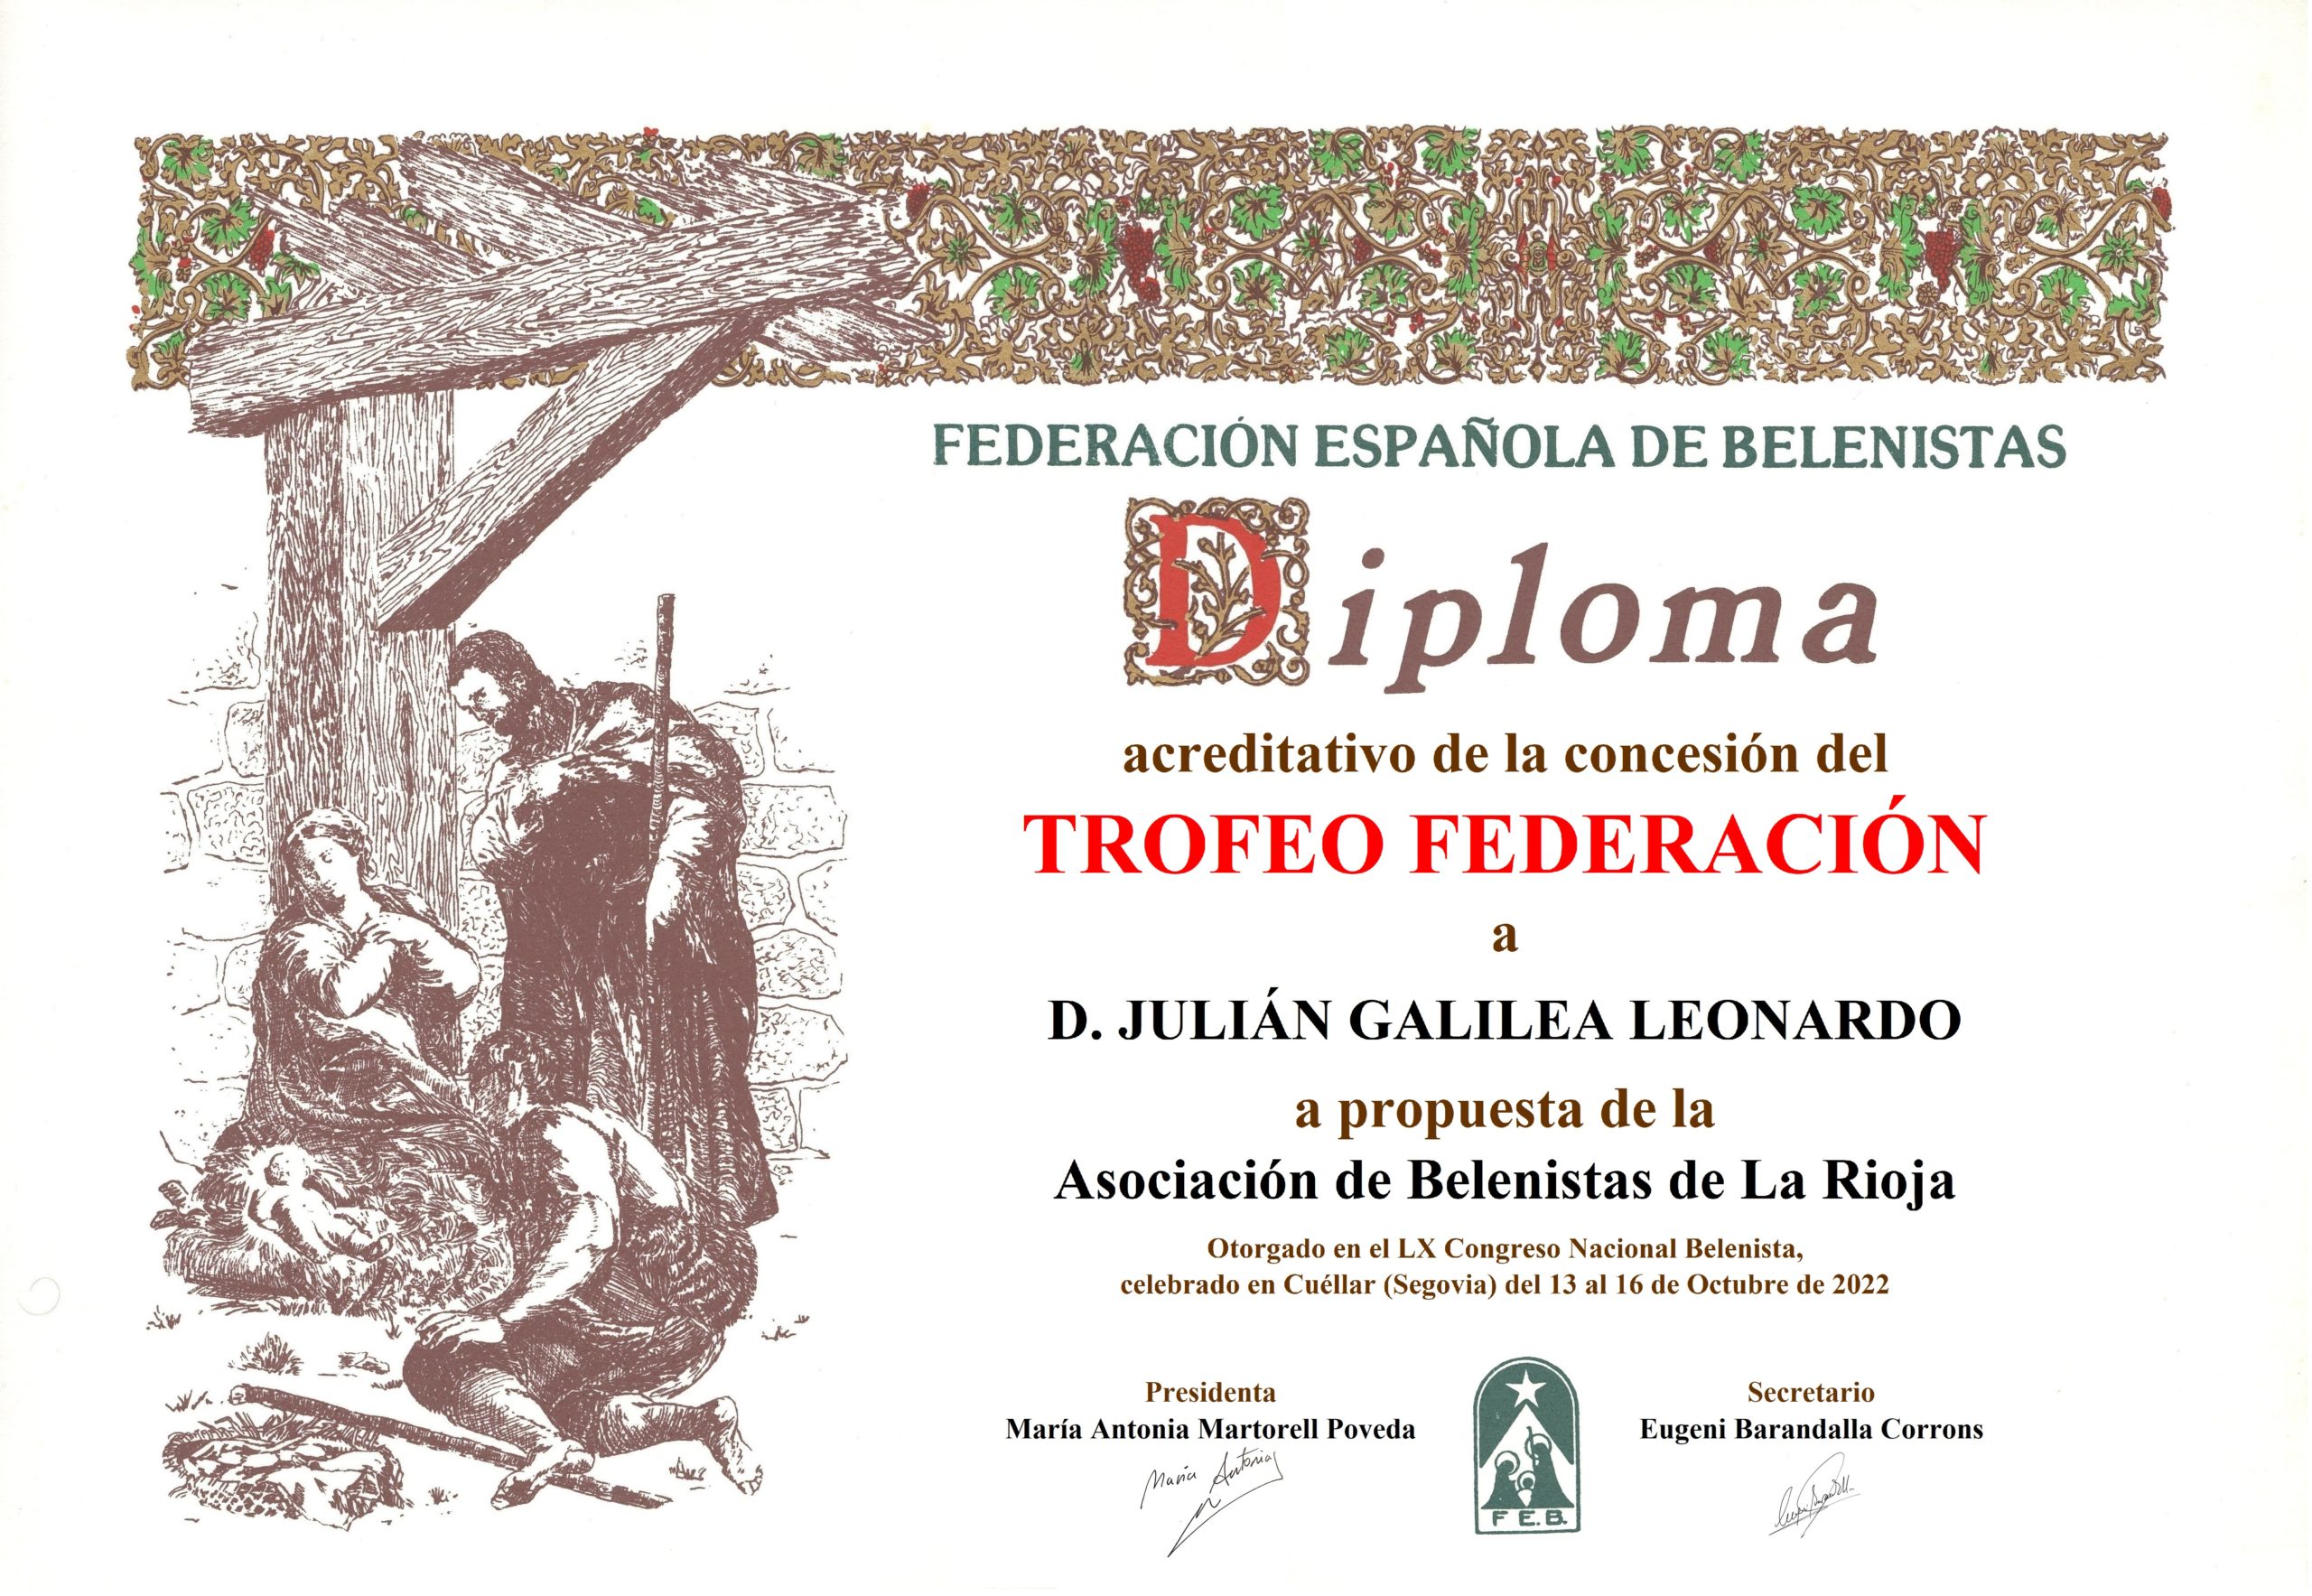 Julián Galilea Leonardo - Diploma Trofeo FEB 2022